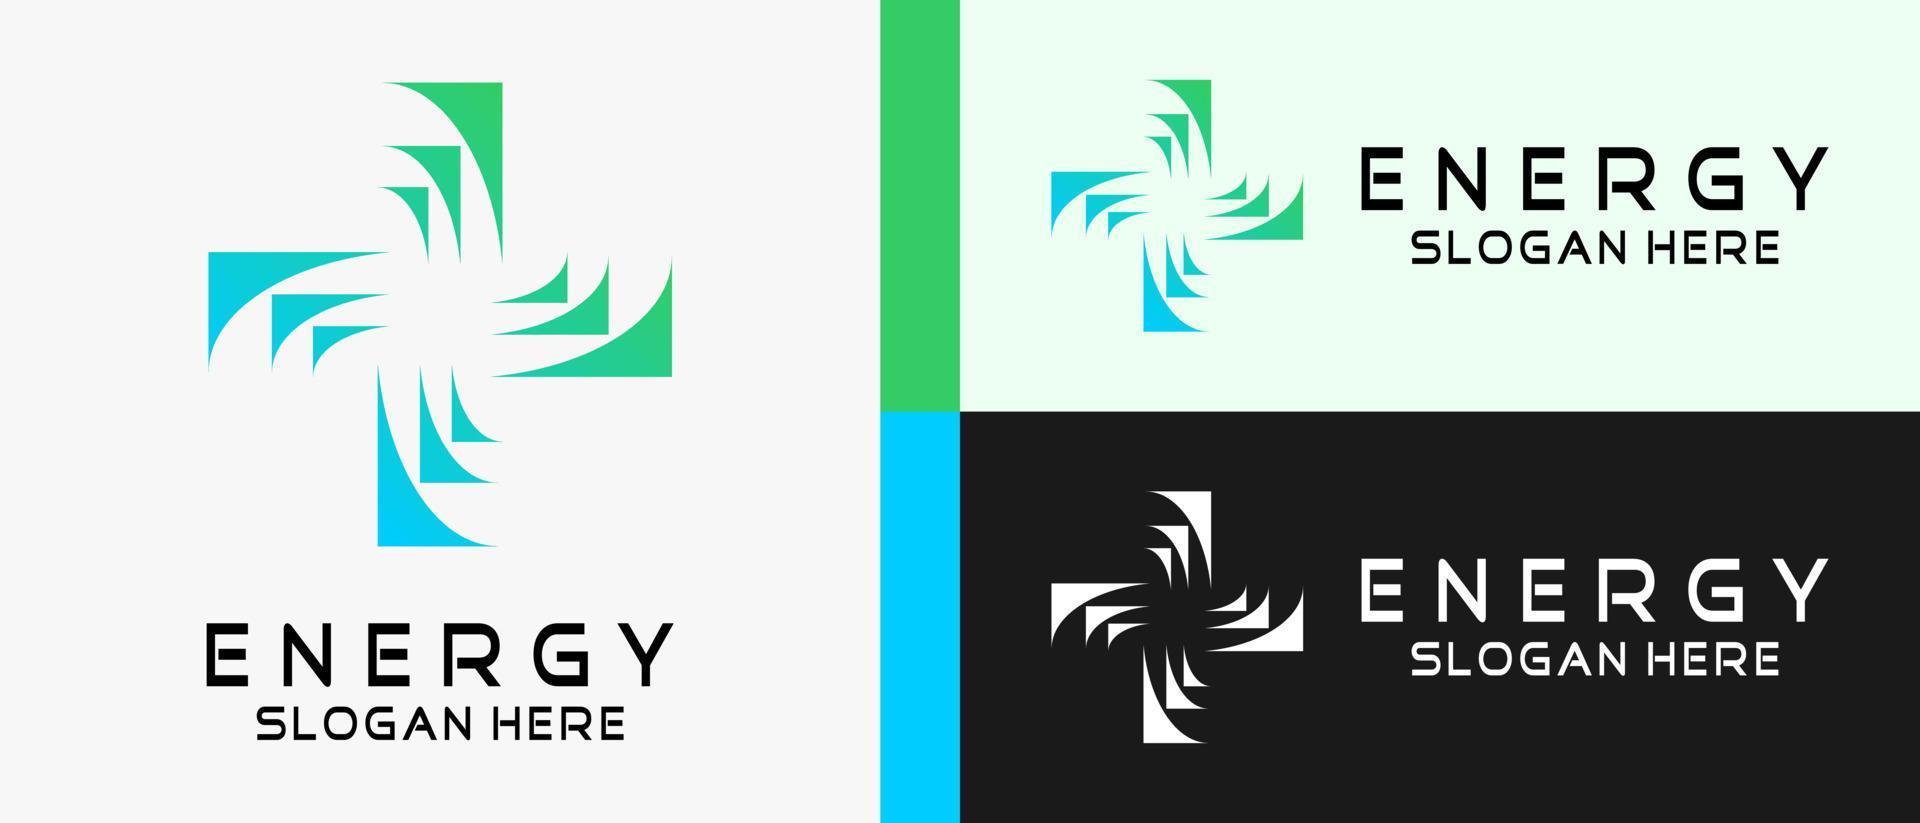 Energielogo-Designvorlage mit einem kreativen Konzept in Form eines Plus- oder Kreuzzeichens. Premium-Vektor-Logo-Illustration vektor